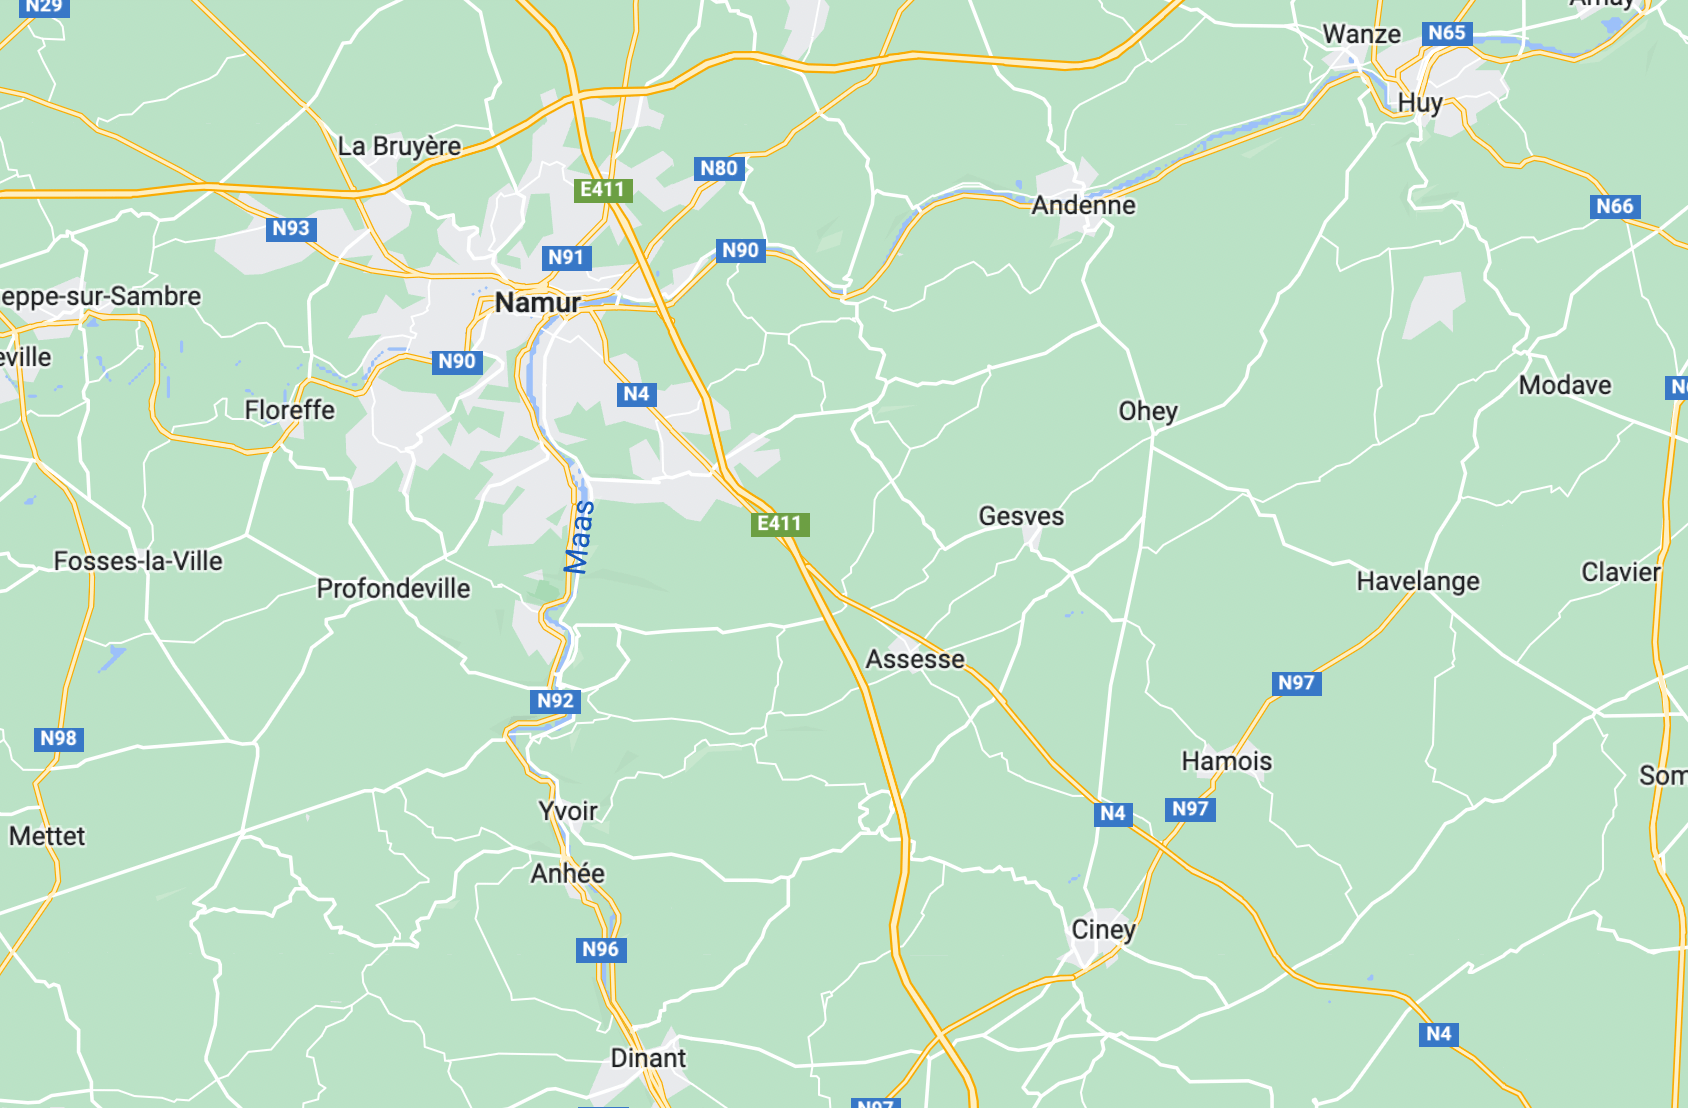 Kartenansicht von Belgischer Namur Region rund um den Fluss Maas, in welcher die Pommes Frites erfunden wurde 